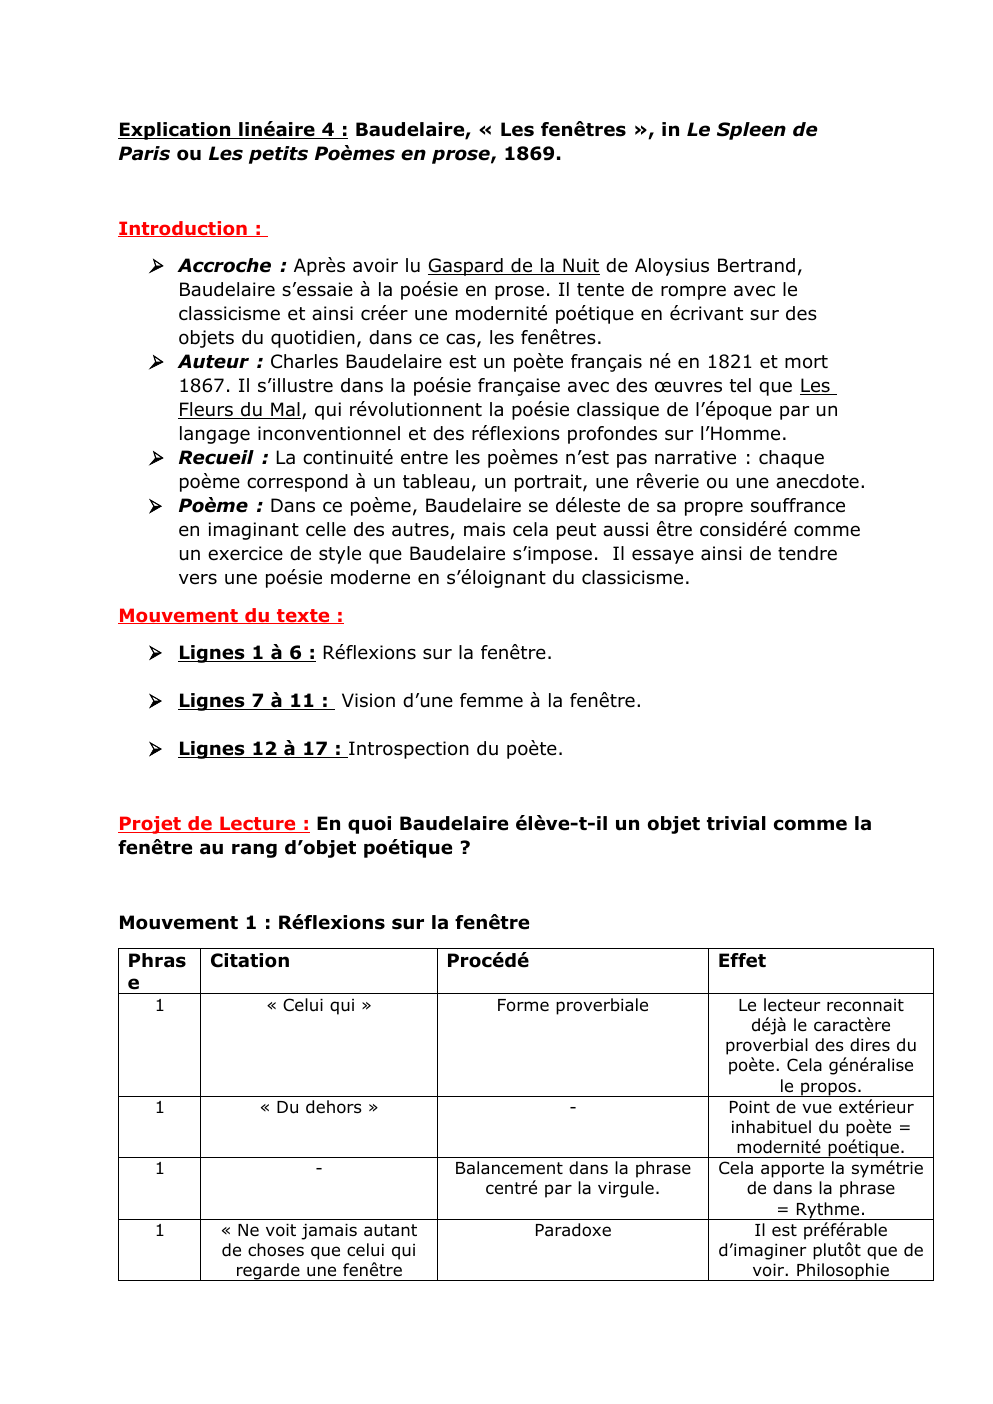 Prévisualisation du document Analyse linéaire "Les Fenêtres" de Baudelaire